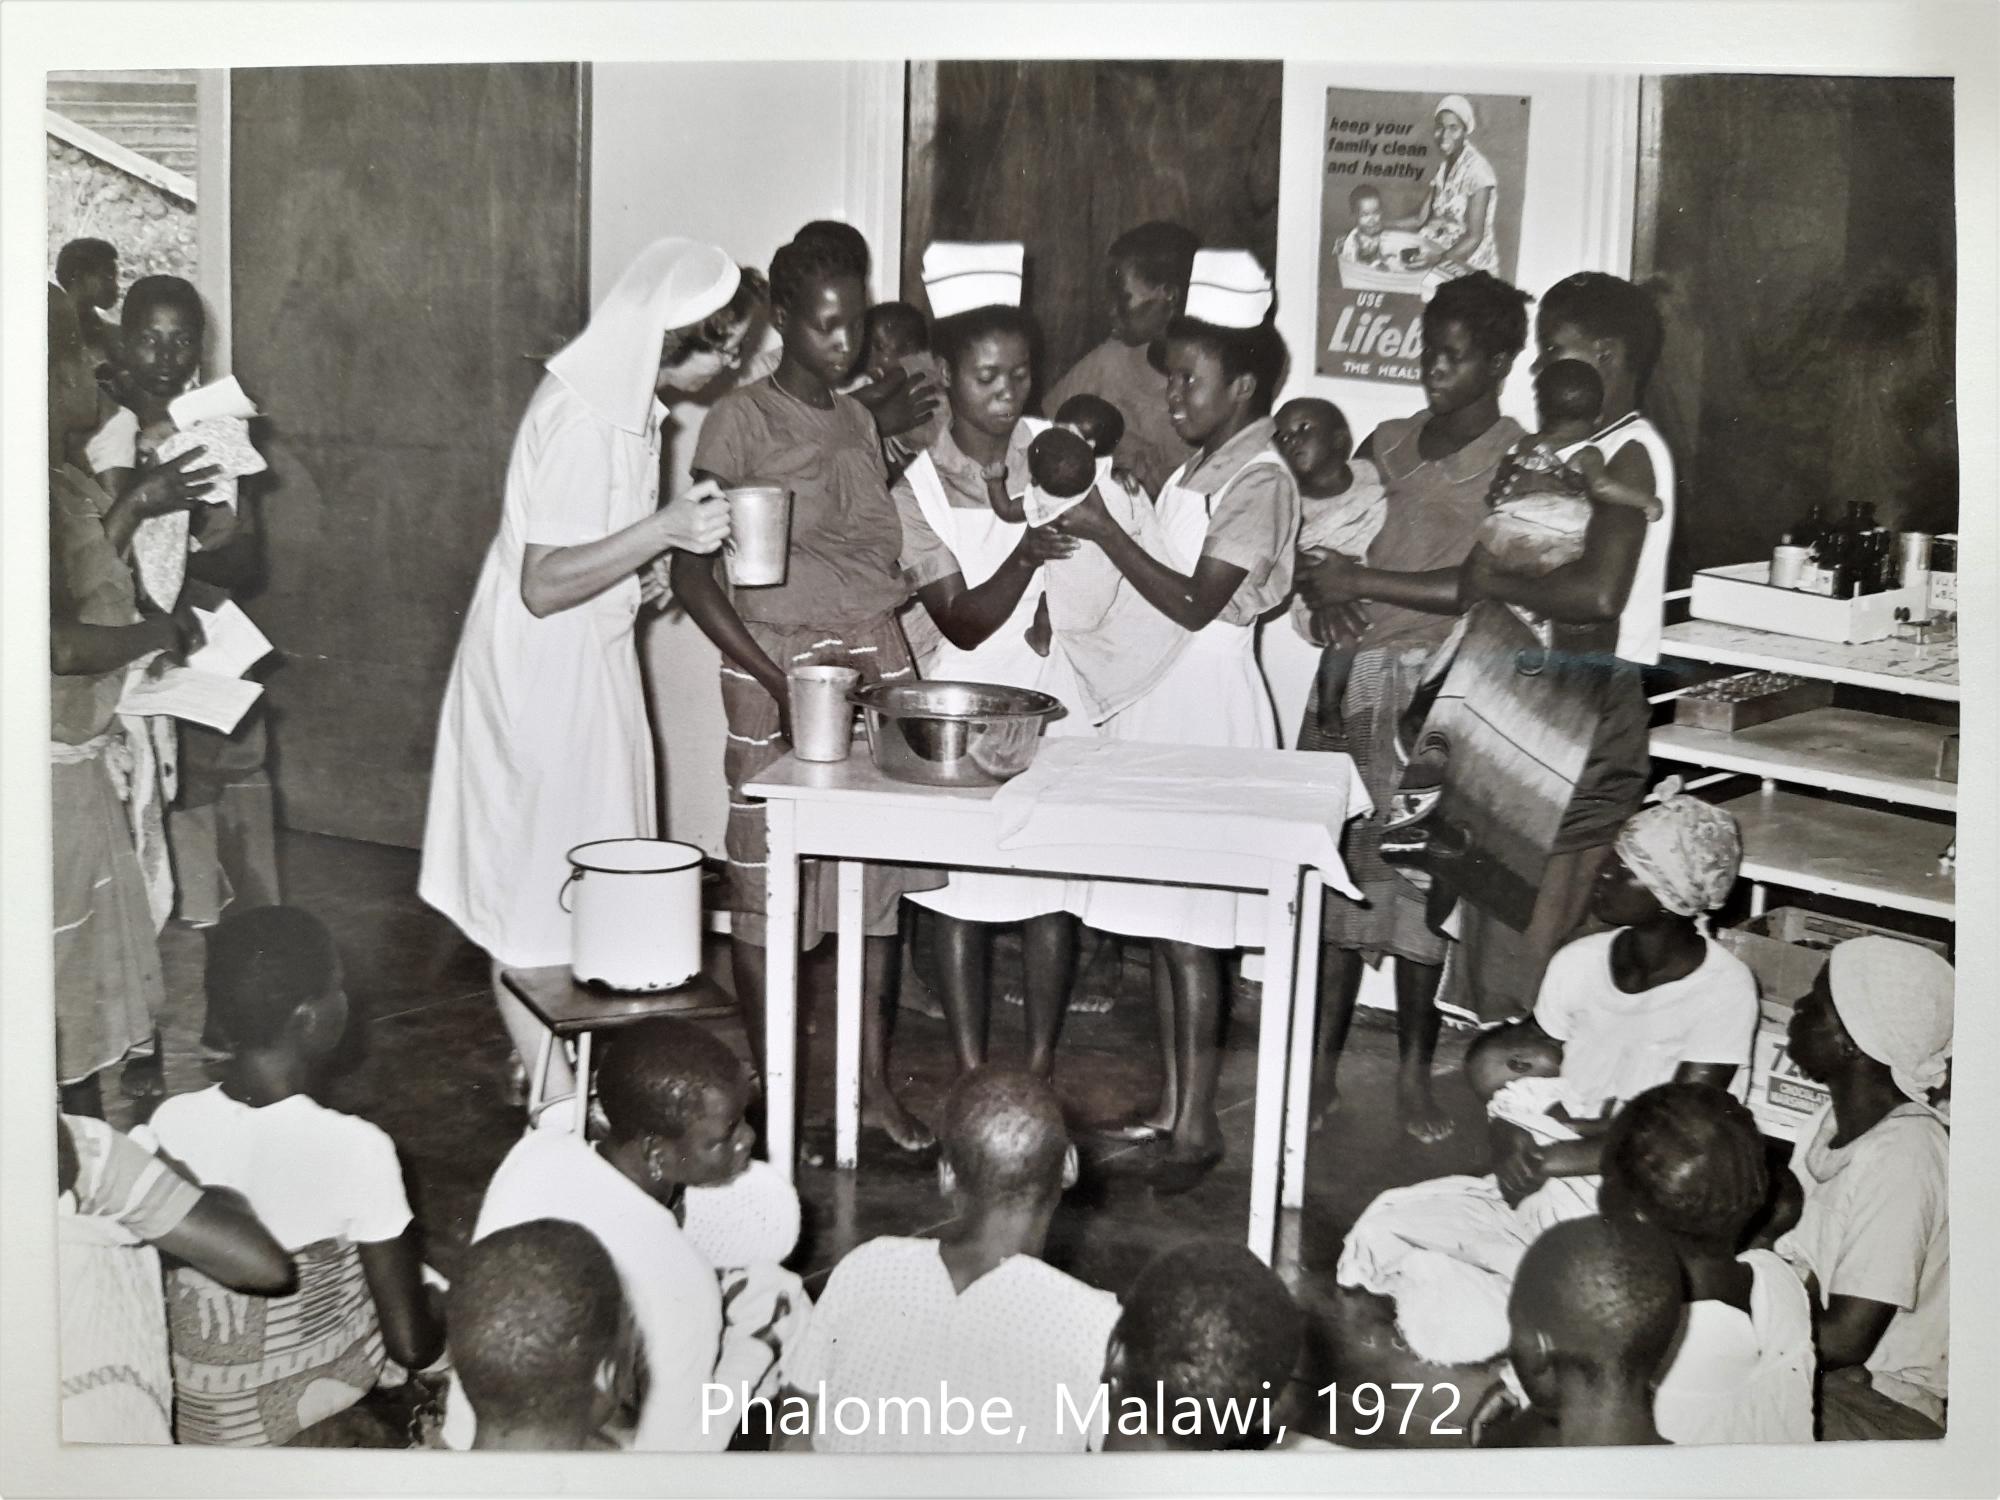 A maternity clinic, Phalombe, Malawi, 1972